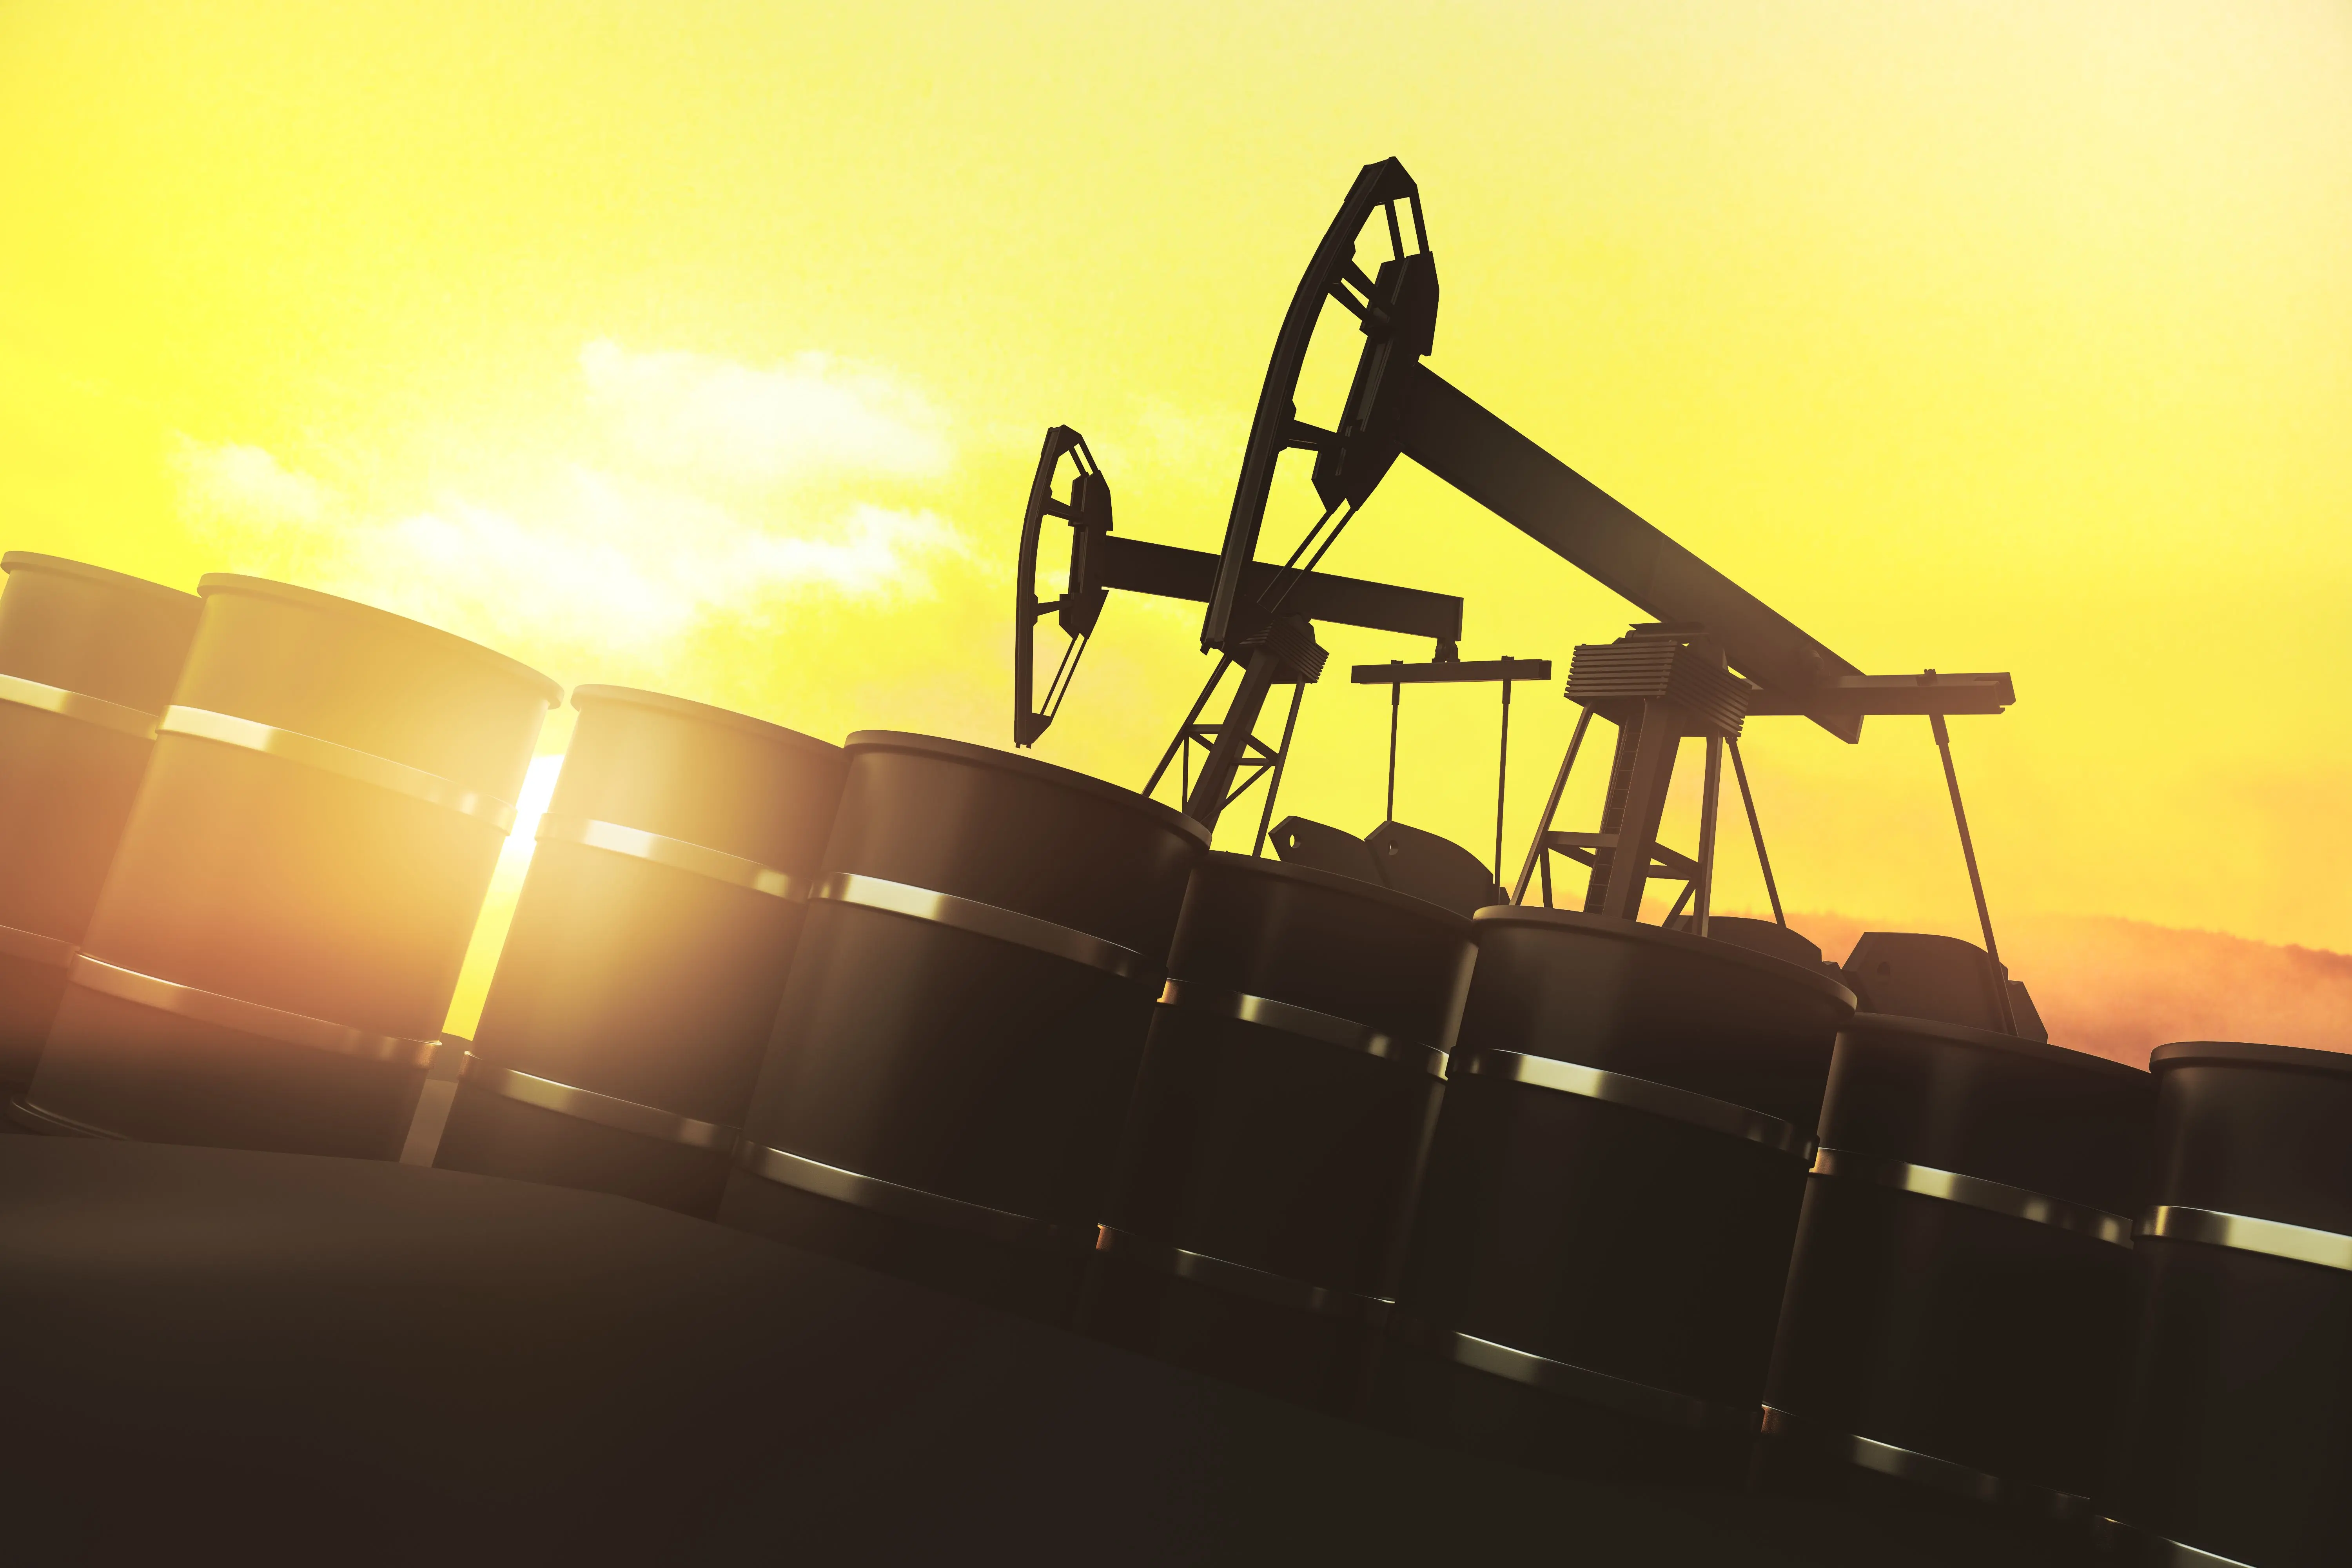 Сполучені Штати Америки, Китай та Організація країн експортерів нафти (ОПЕК+) стали визначальними гравцями на ринку нафти: як це вплинуло на ціни?